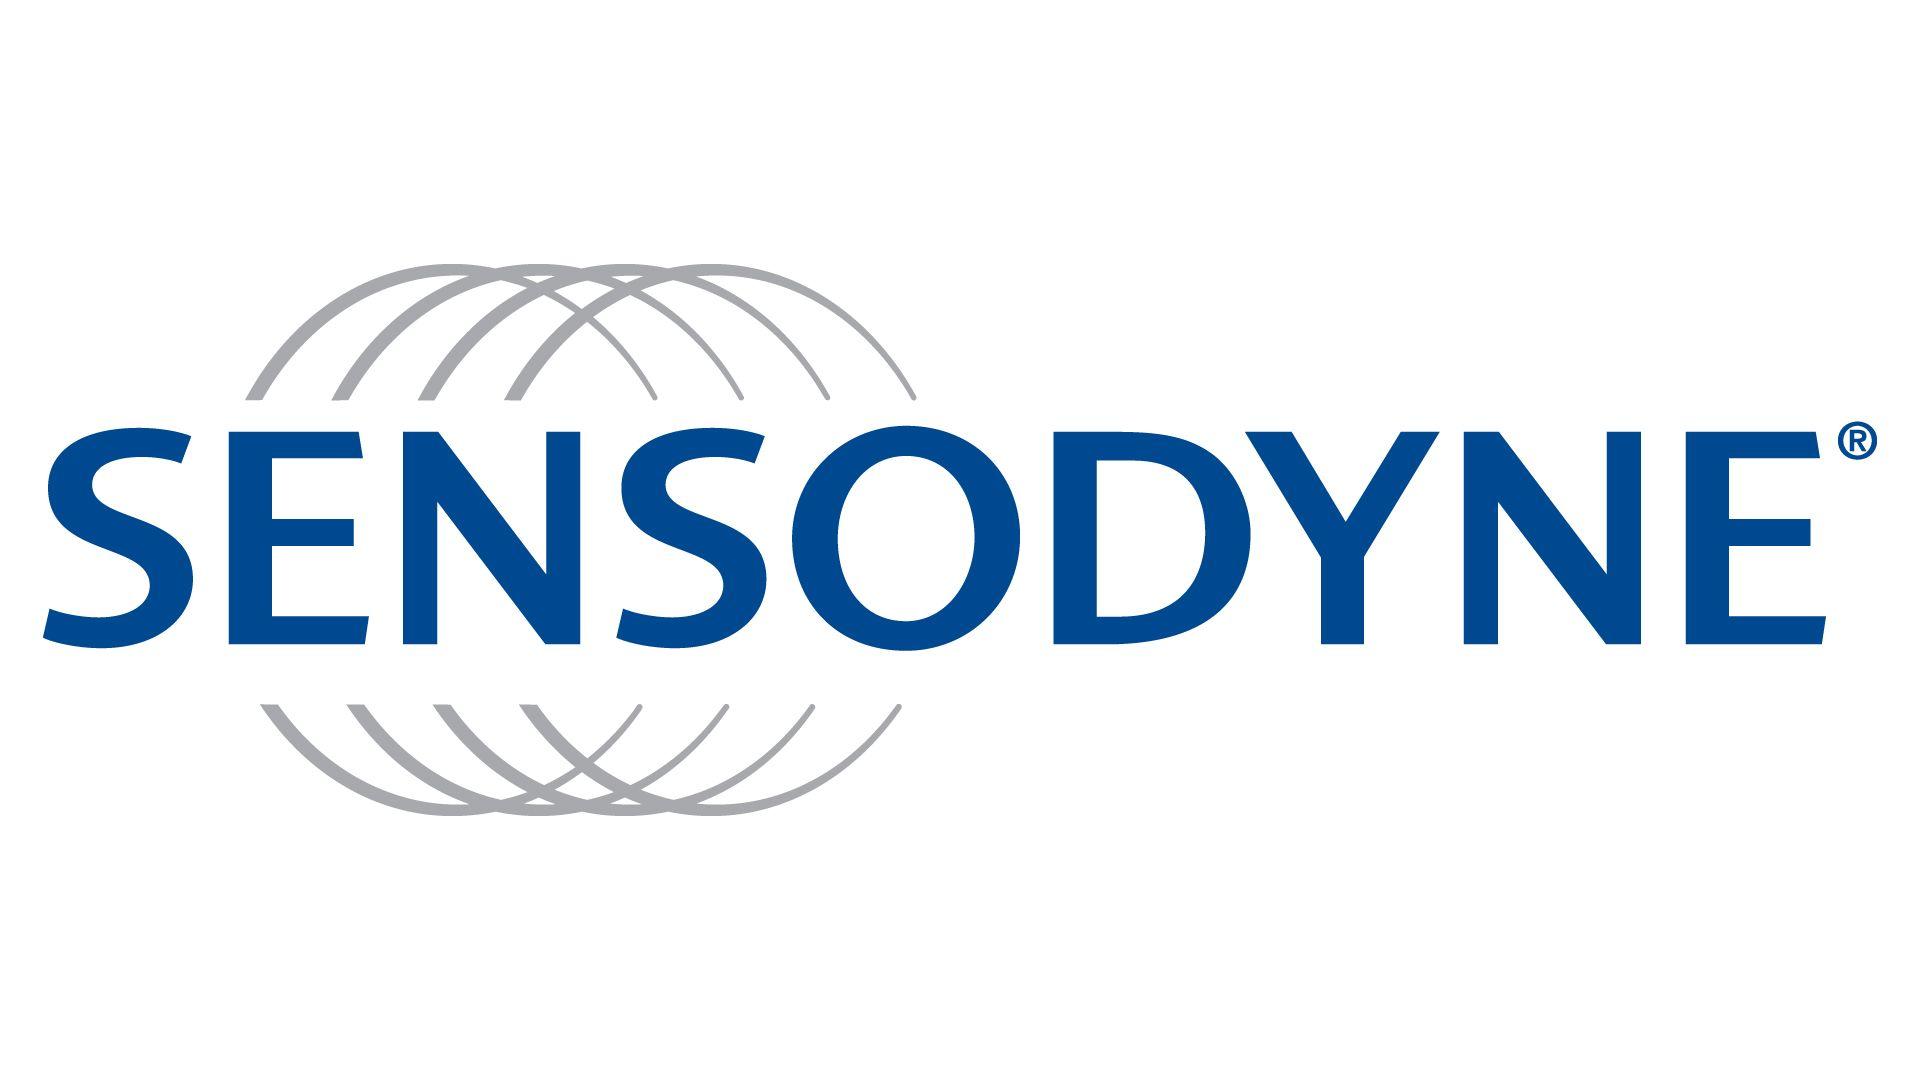 Sensodyne Logo - Sensodyne | Logopedia | FANDOM powered by Wikia